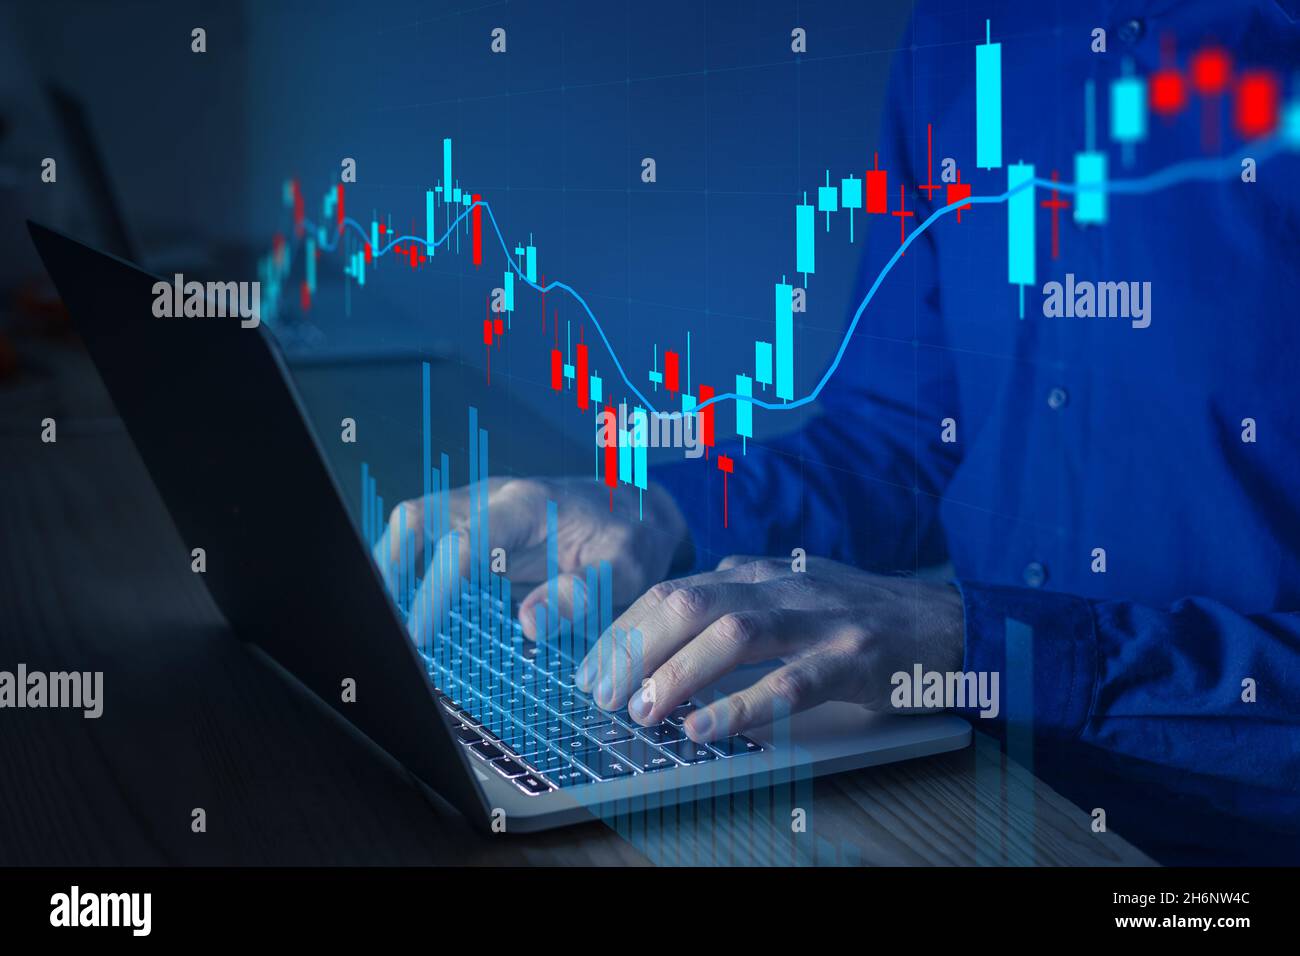 Grafico finanziario con dati del mercato azionario o del forex riportati sul grafico a candelabro. Concetto di finanza e investimento. Foto Stock